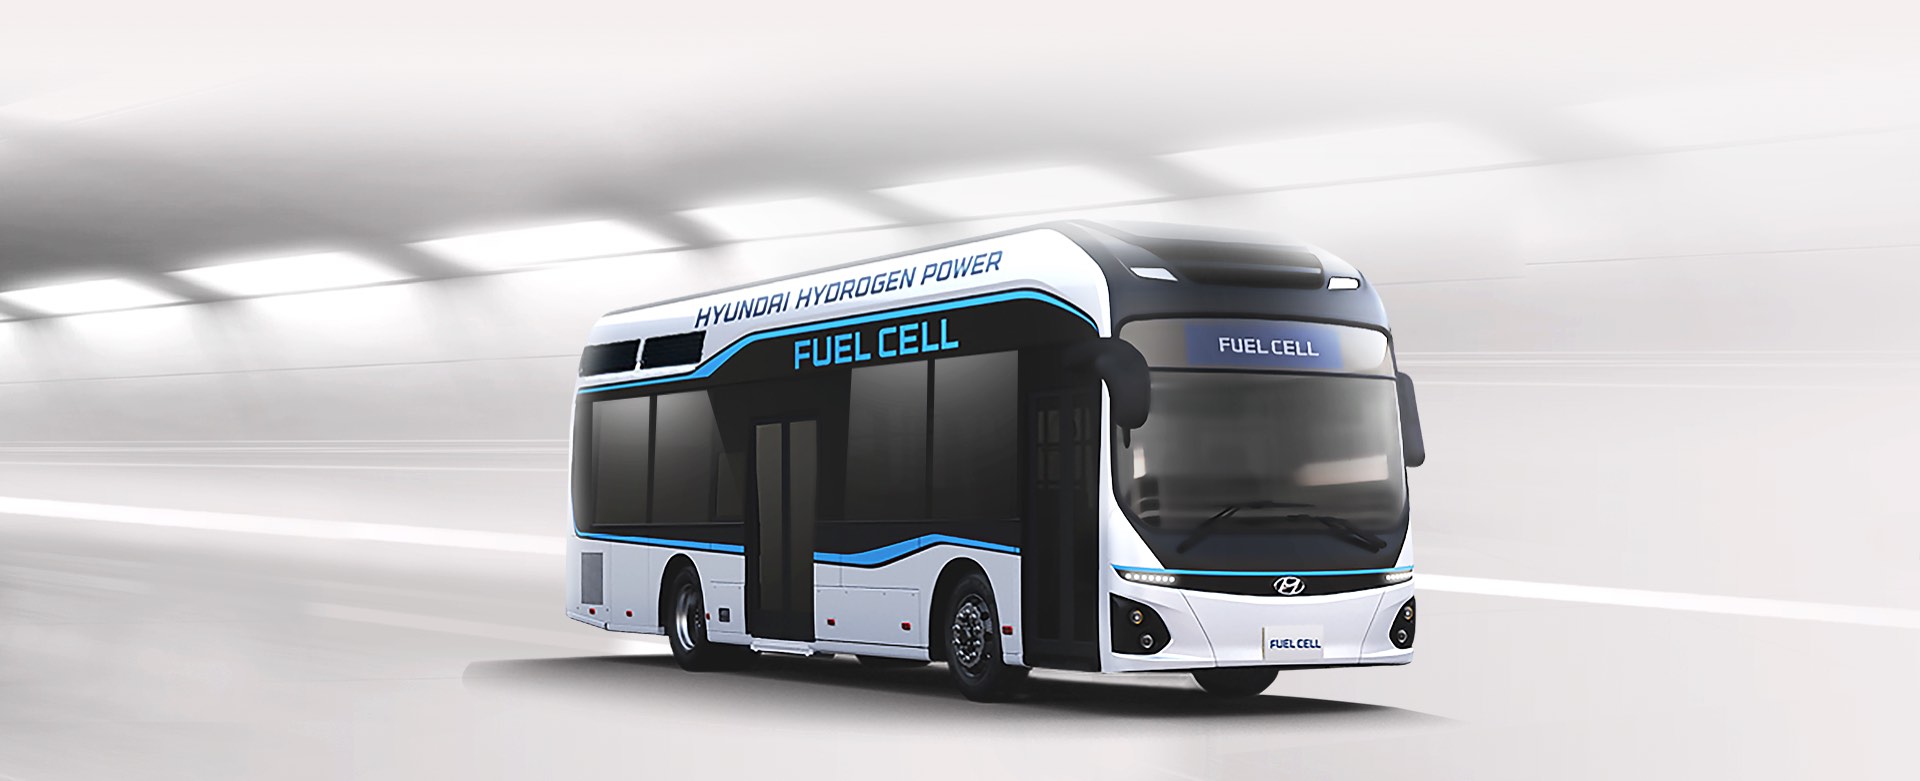 fuell cell - Hyundai camiones y buses Ecuador